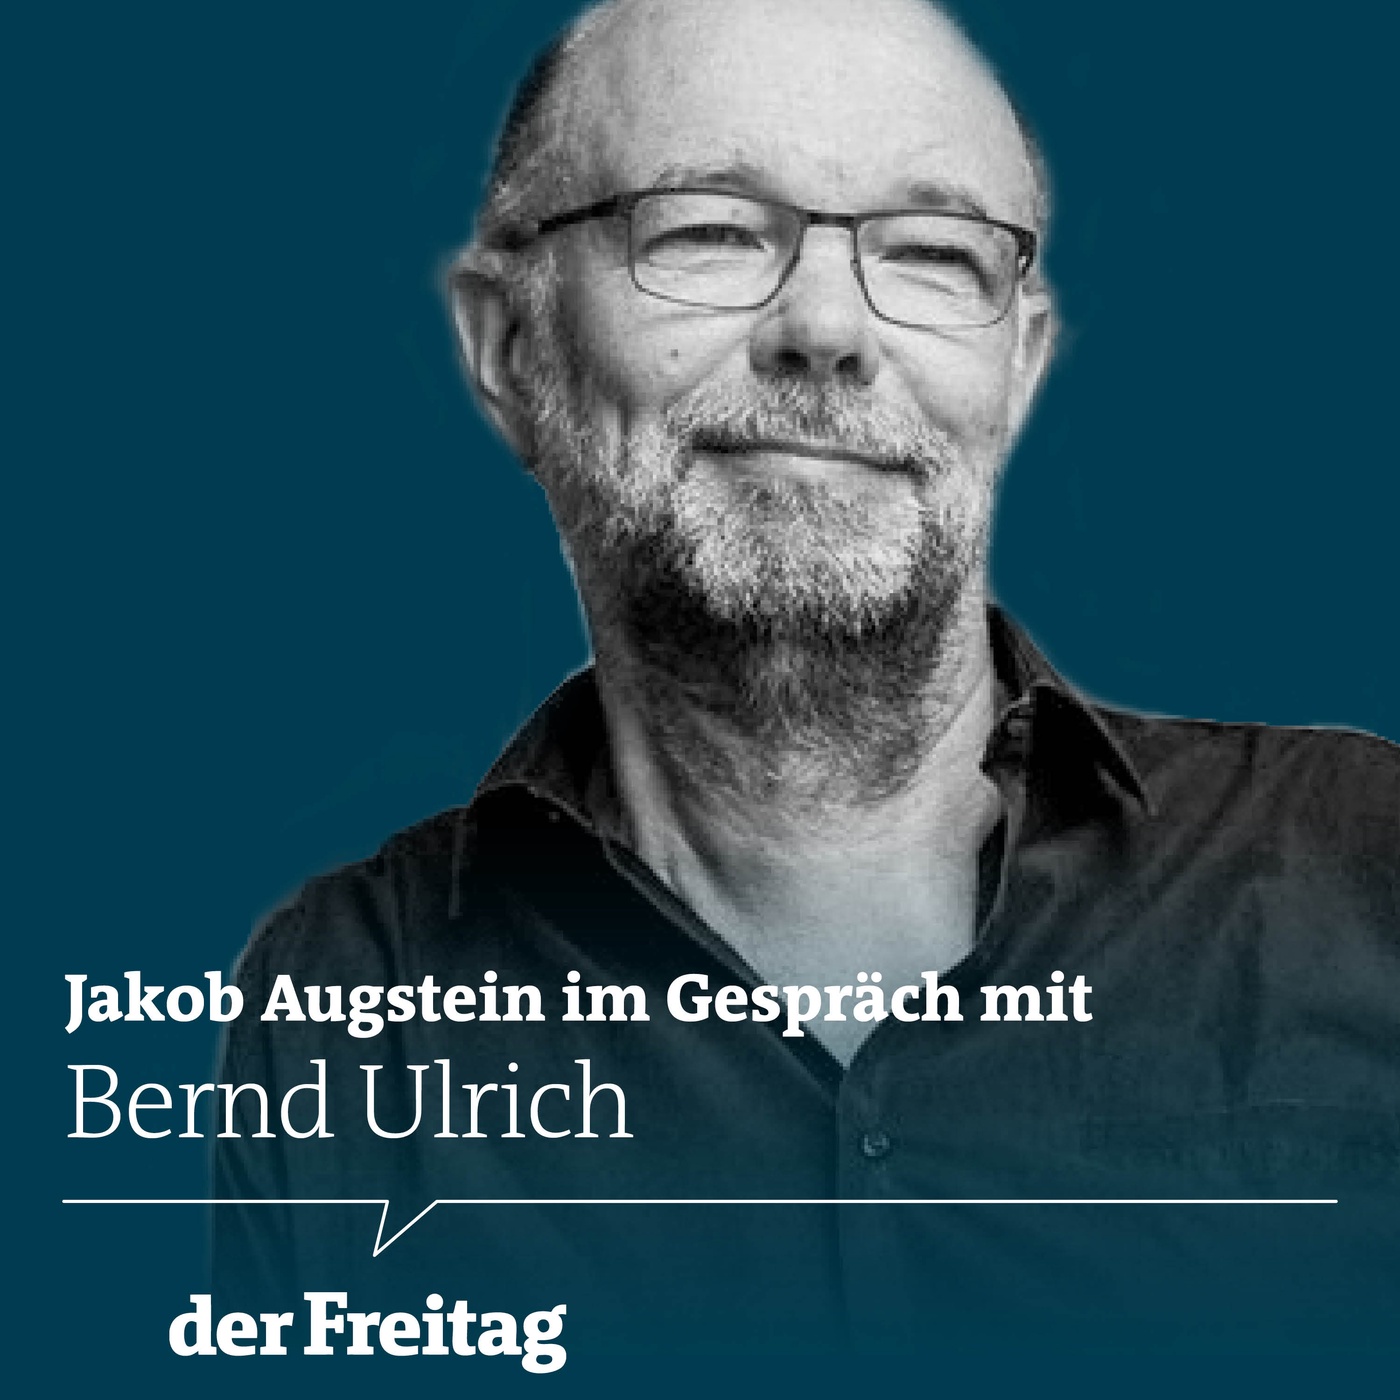 Jakob Augstein im Gespräch mit Bernd Ulrich